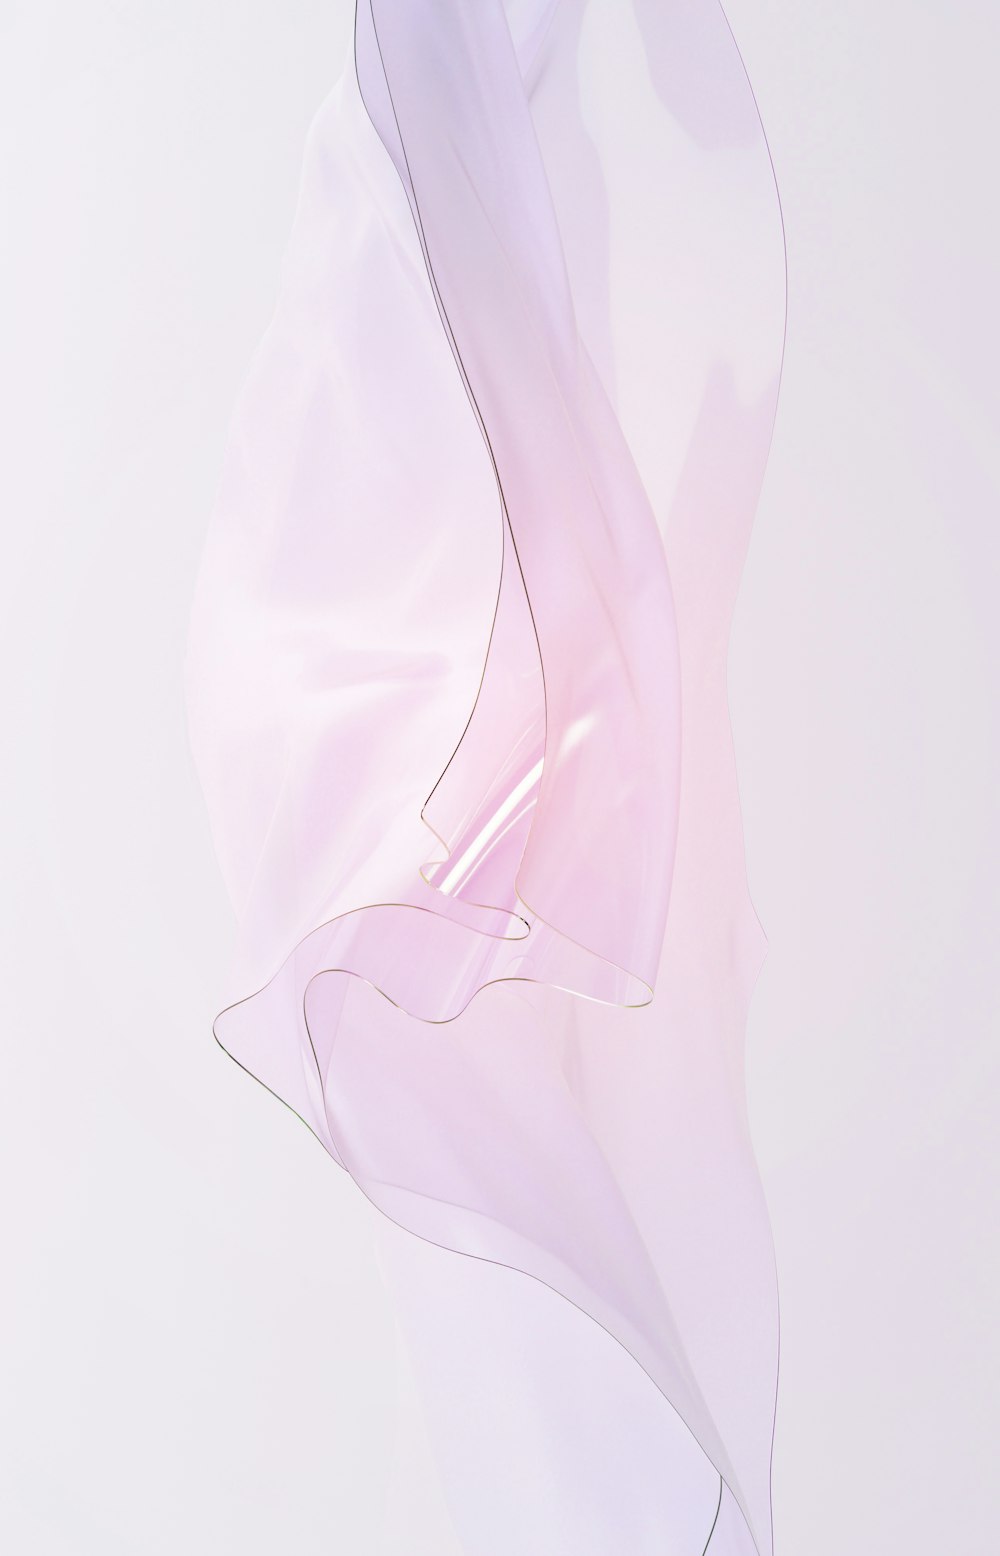 uma fotografia abstrata de um tecido branco